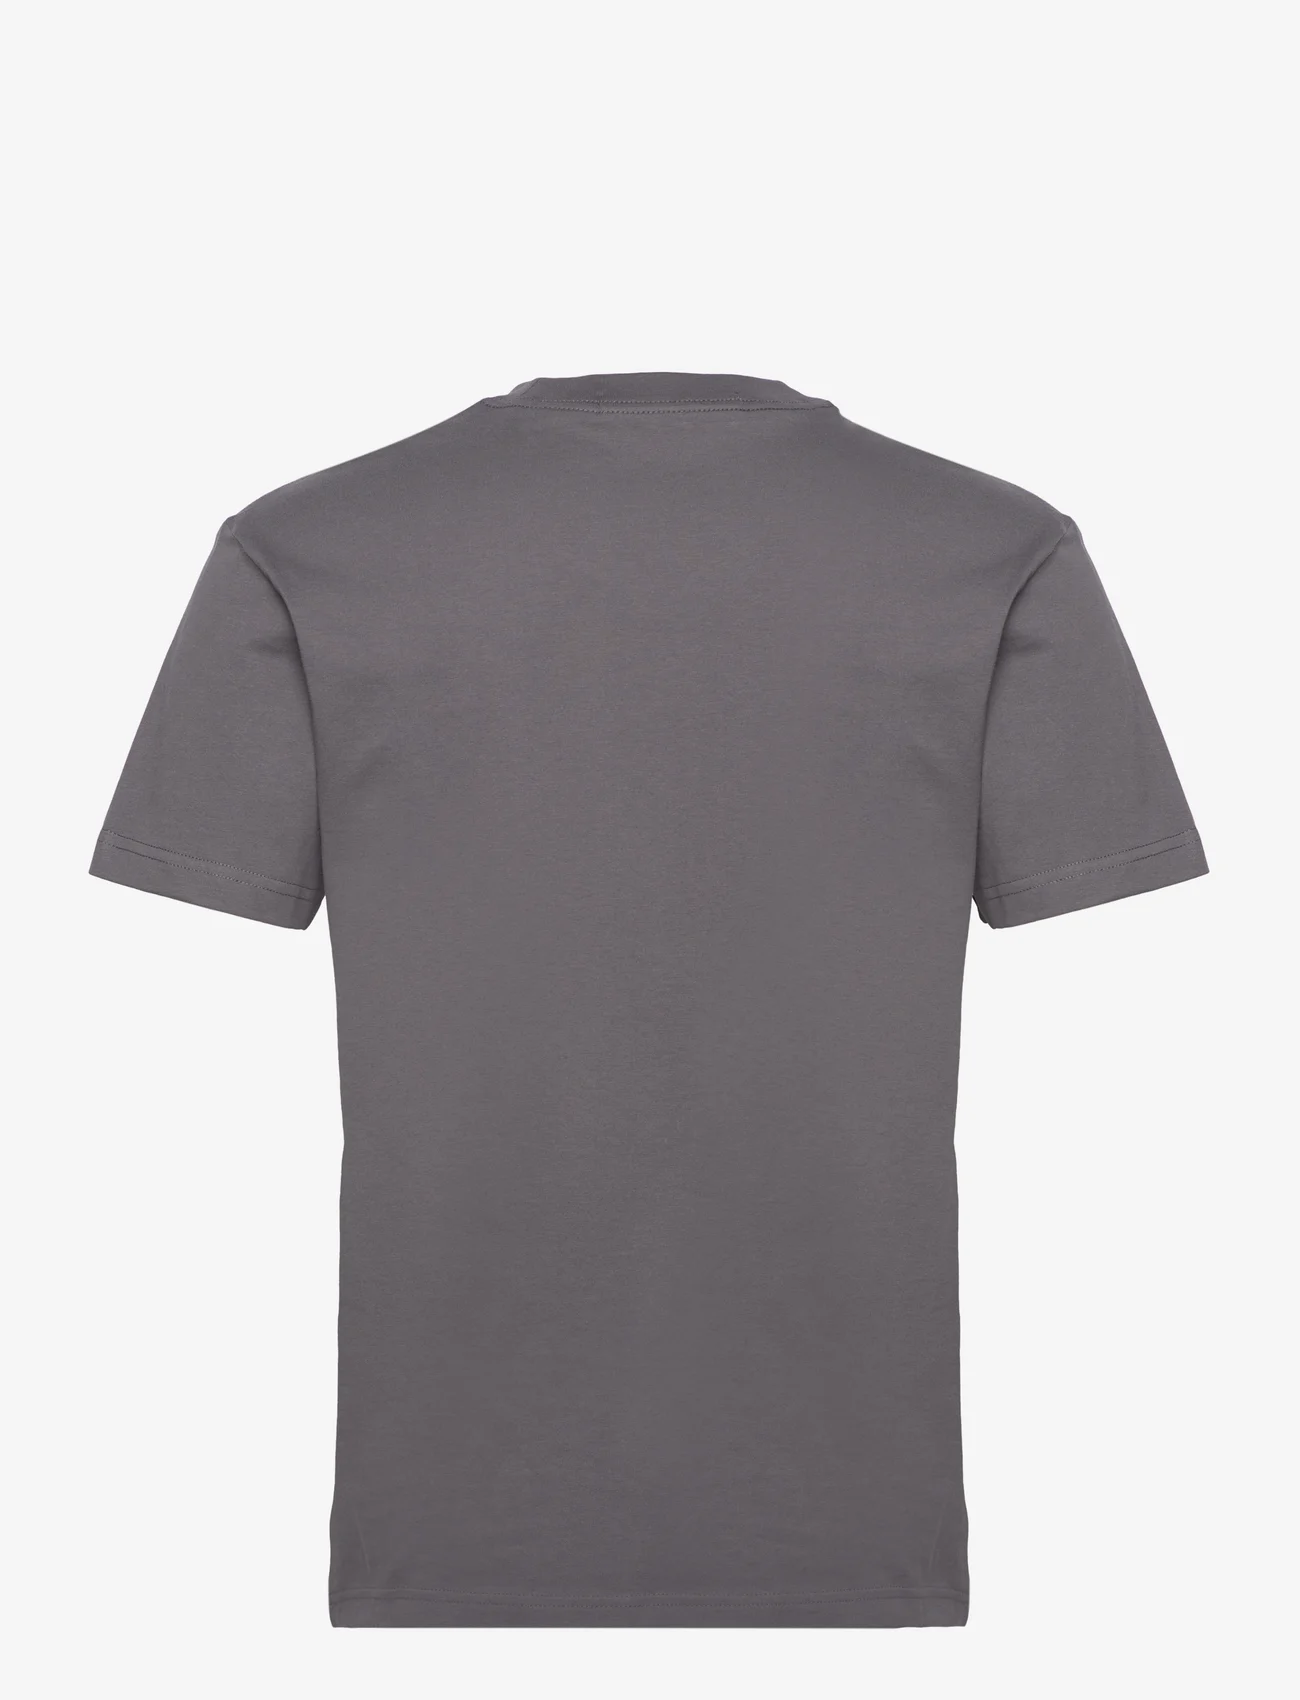 Calvin Klein Jeans - INSTITUTIONAL TEE - basic t-shirts - dark grey - 1